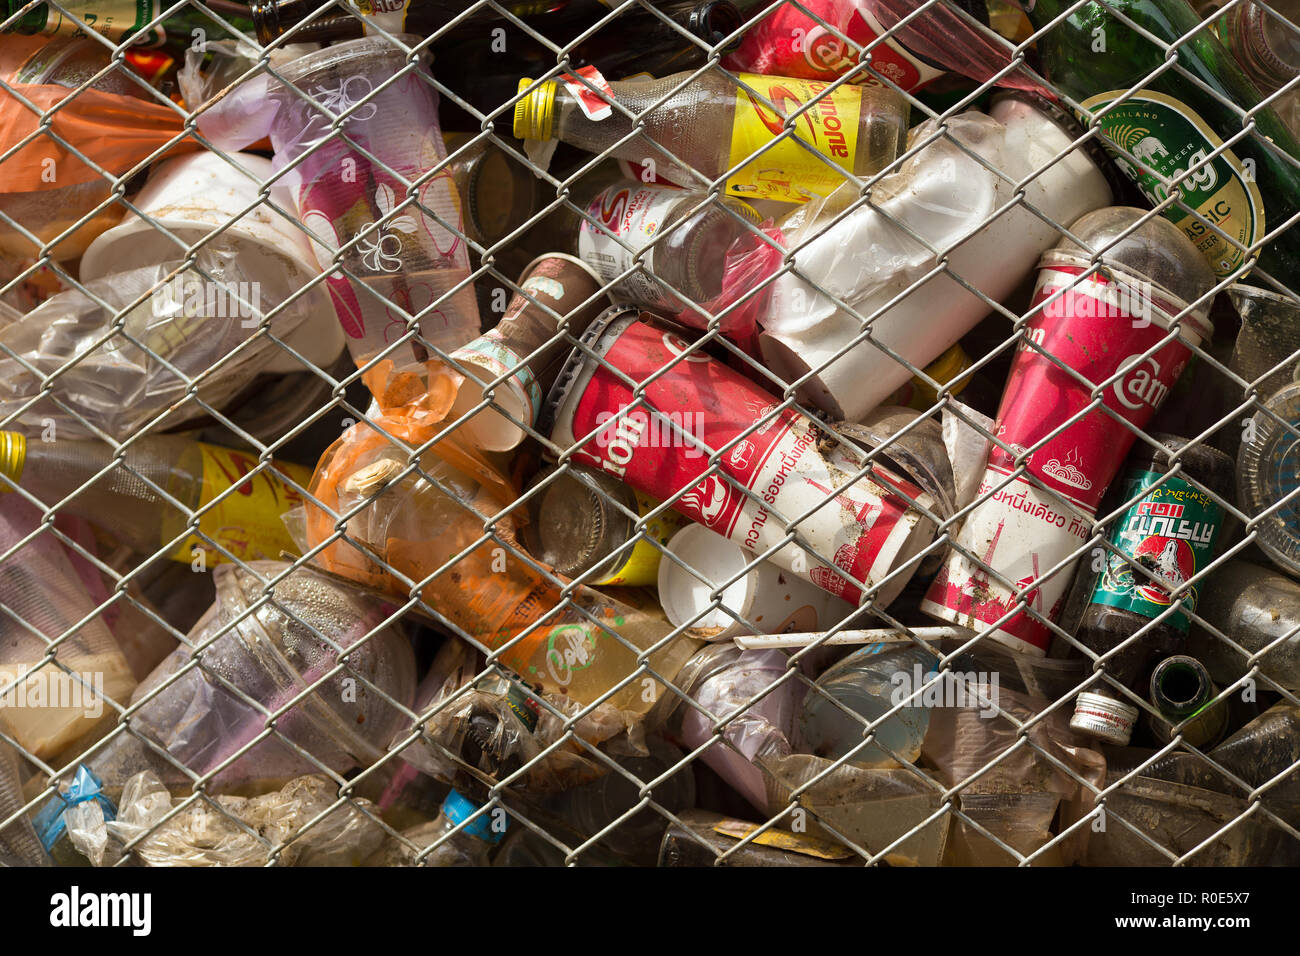 SANGHLABURI, Thaïlande, le 24 janvier 2016 : un public clôturé bac est plein de canettes de soda, verre bottel et autres boissons à Sangkhlaburi, Thaïlande Banque D'Images